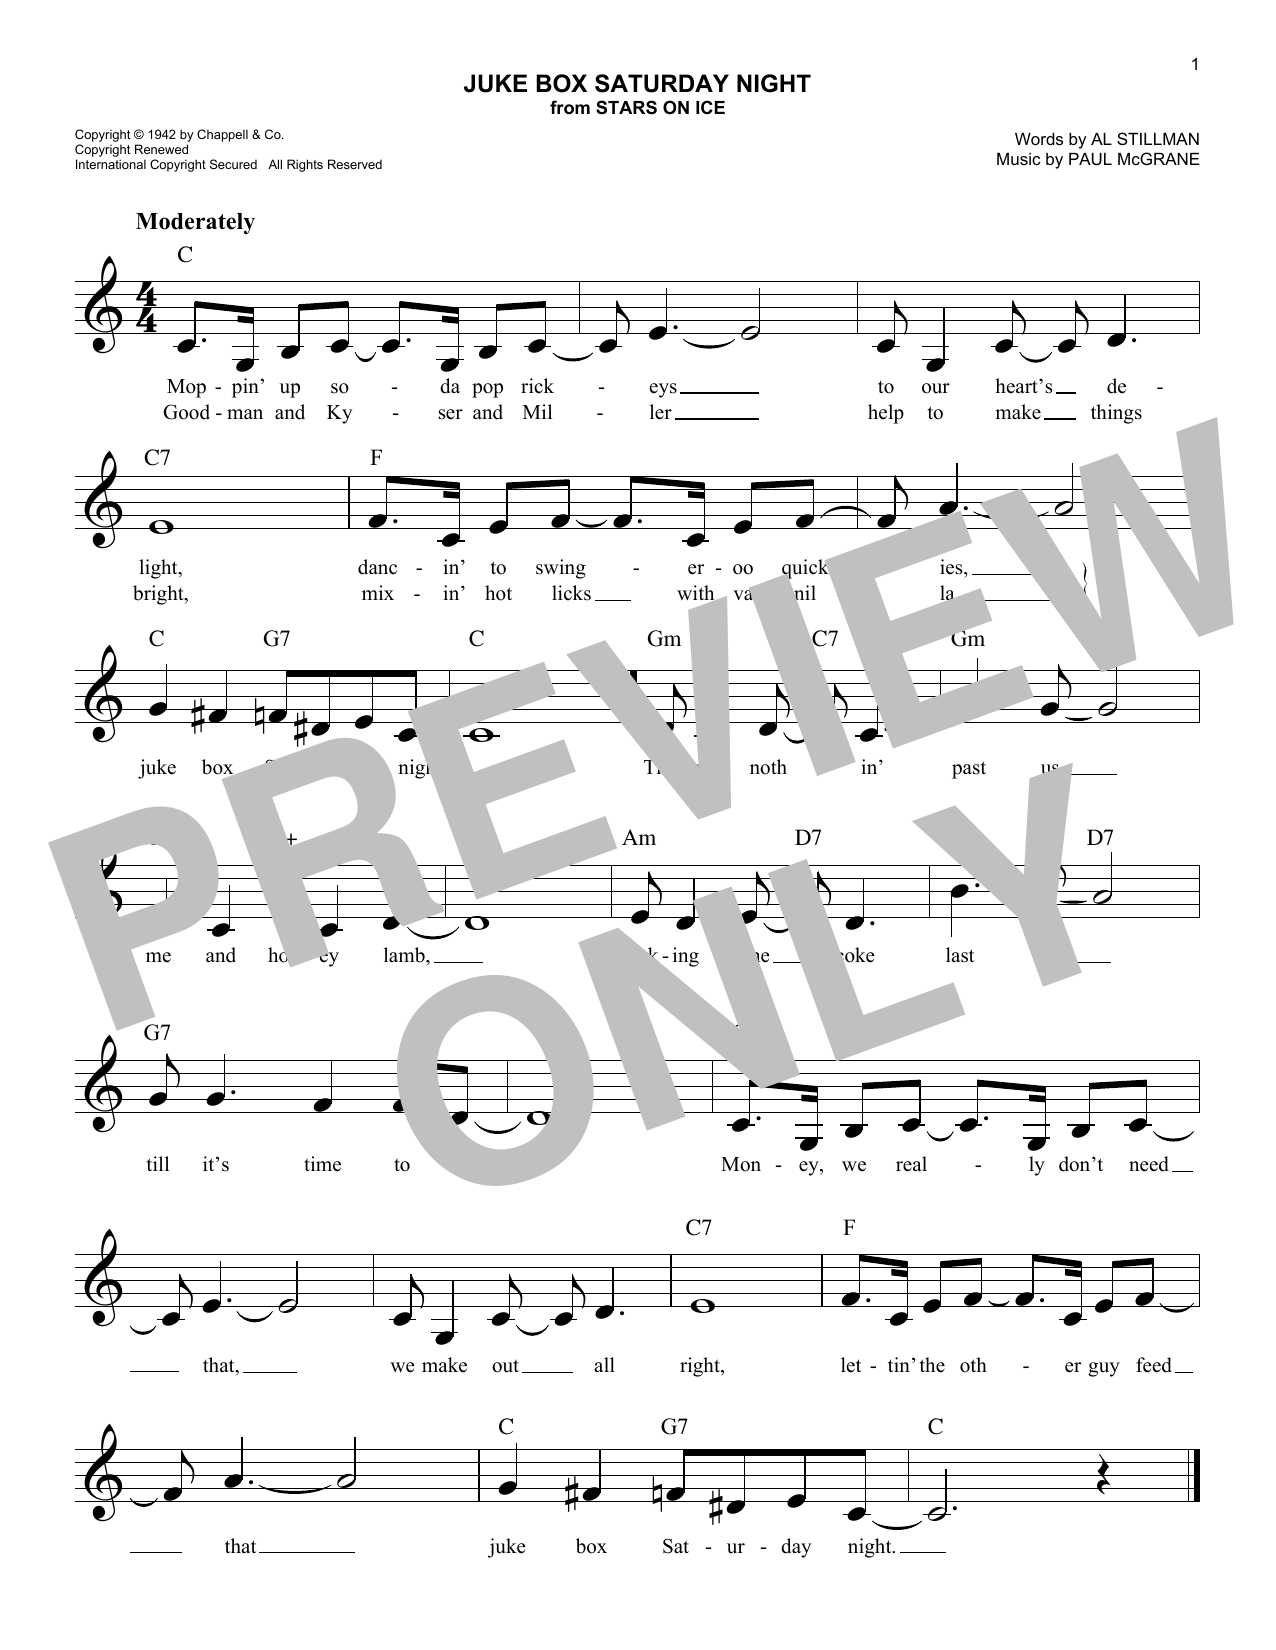 Al Stillman Juke Box Saturday Night sheet music notes and chords. Download Printable PDF.